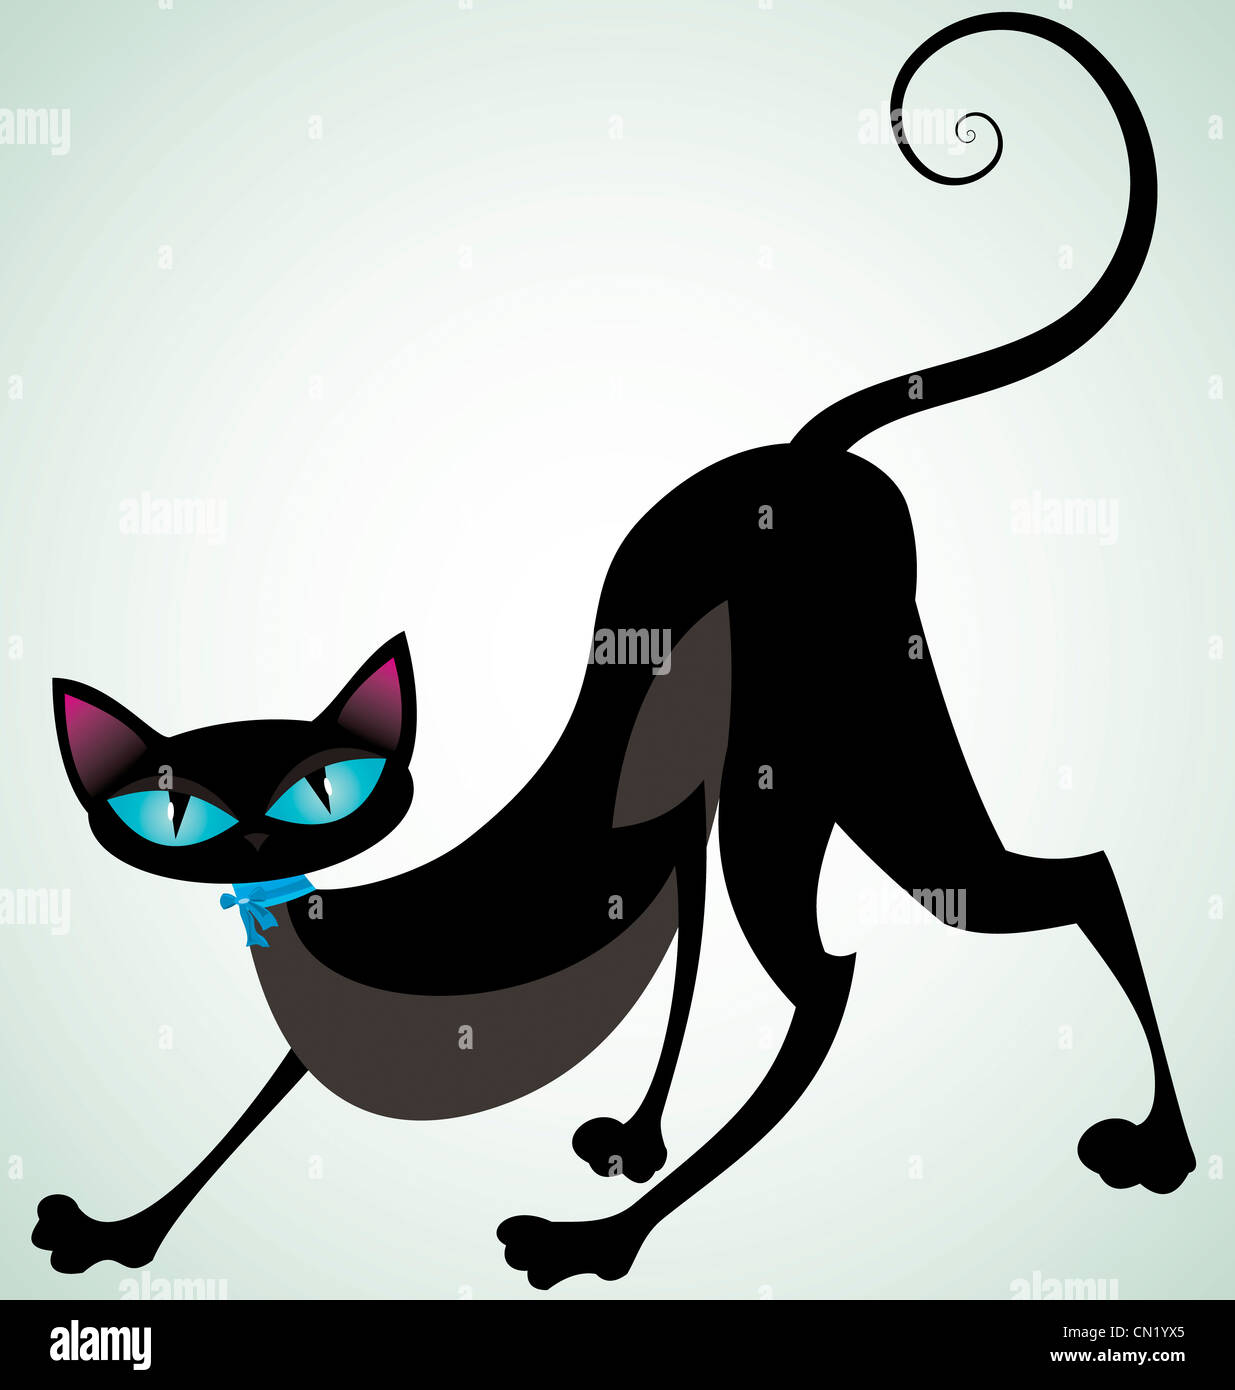 Vector illustration d'un chat noir avec ruban bleu/ Banque D'Images